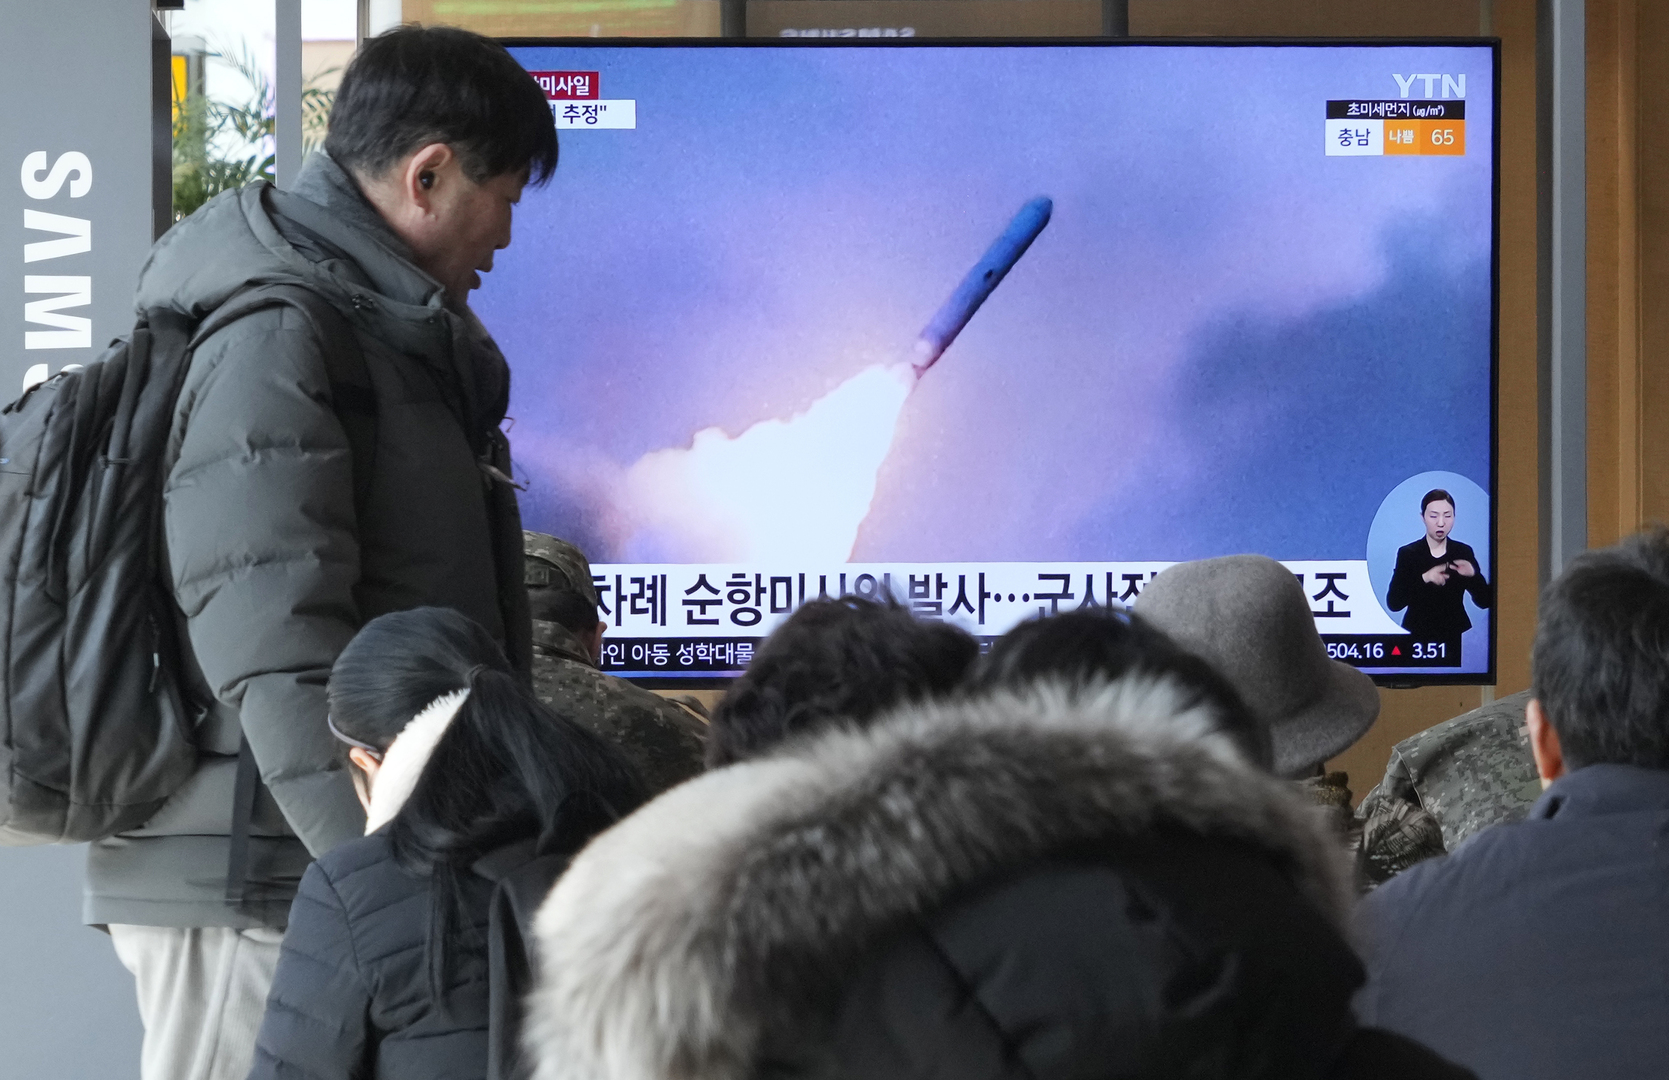 إعلام كوريا الشمالية: اختبار صاروخ مجنح استراتيجي يوم 30 يناير